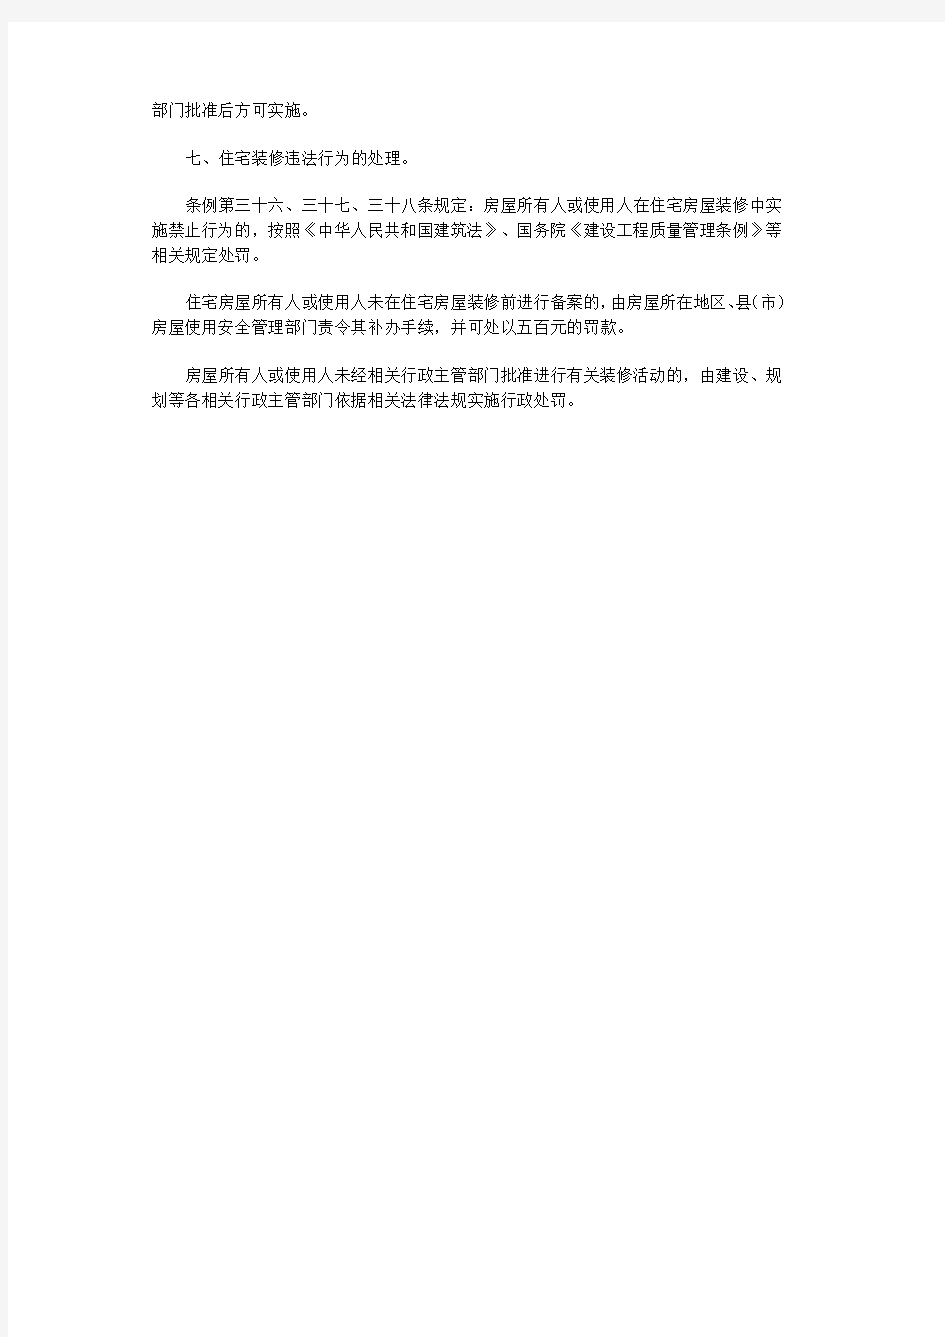 《杭州市城市房屋使用安全管理条例》